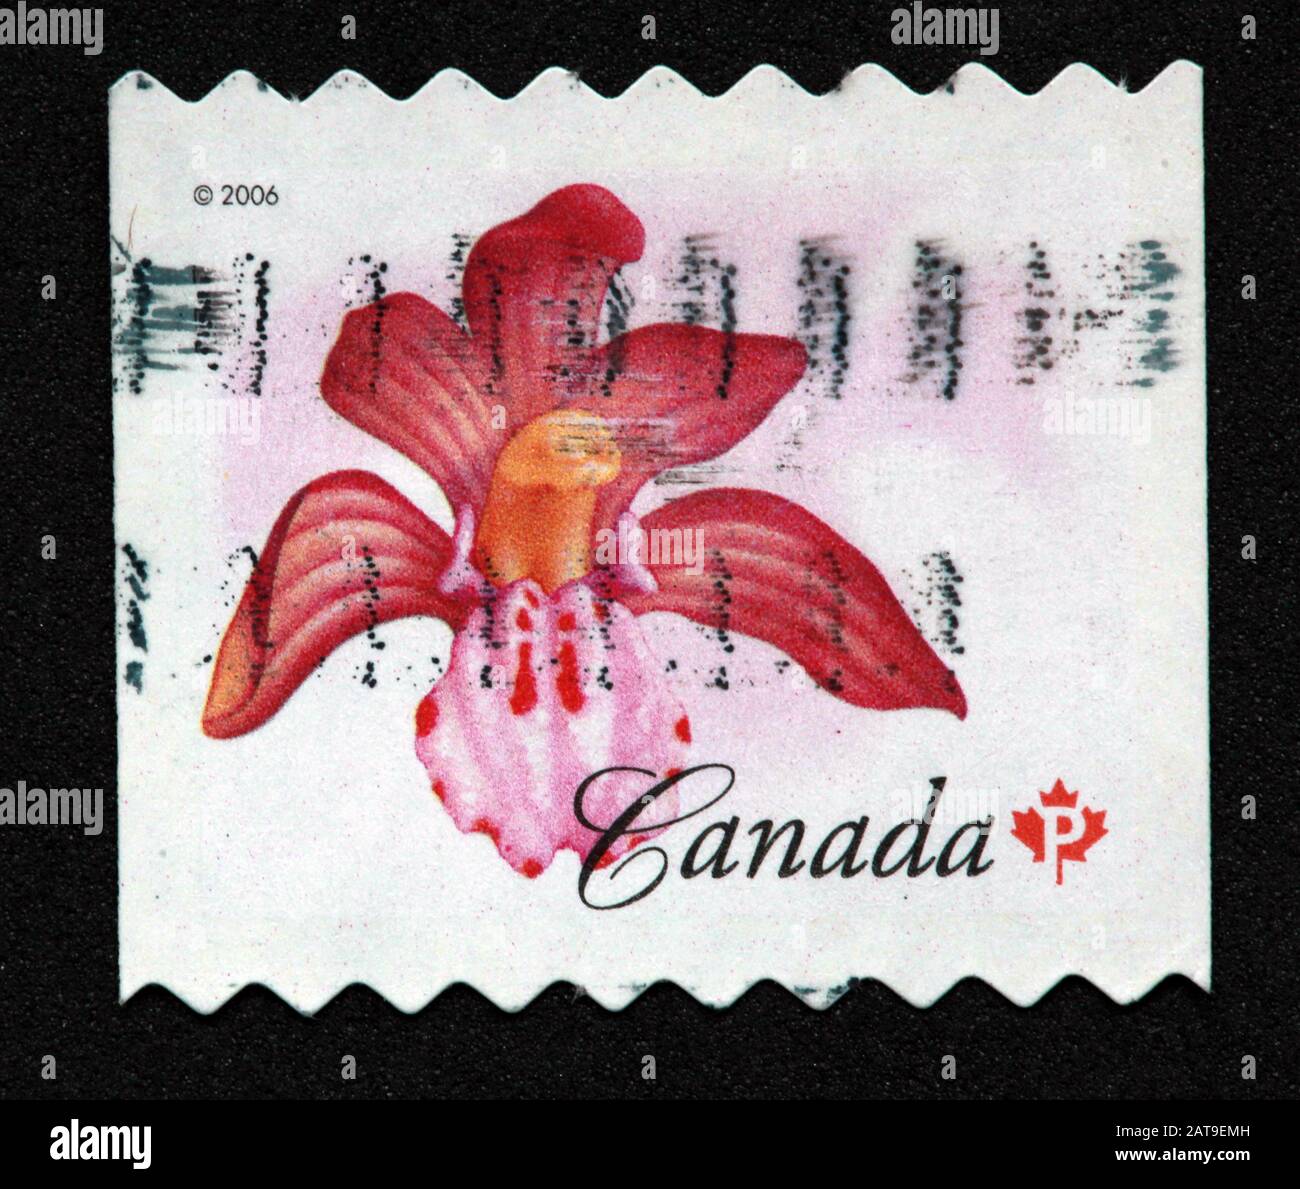 Canadian Stamp, Canada Stamp, Canada Post, usato Stamp, Canada, 2006, fiore, fiore rosso, Corallorhiza maculata Foto Stock